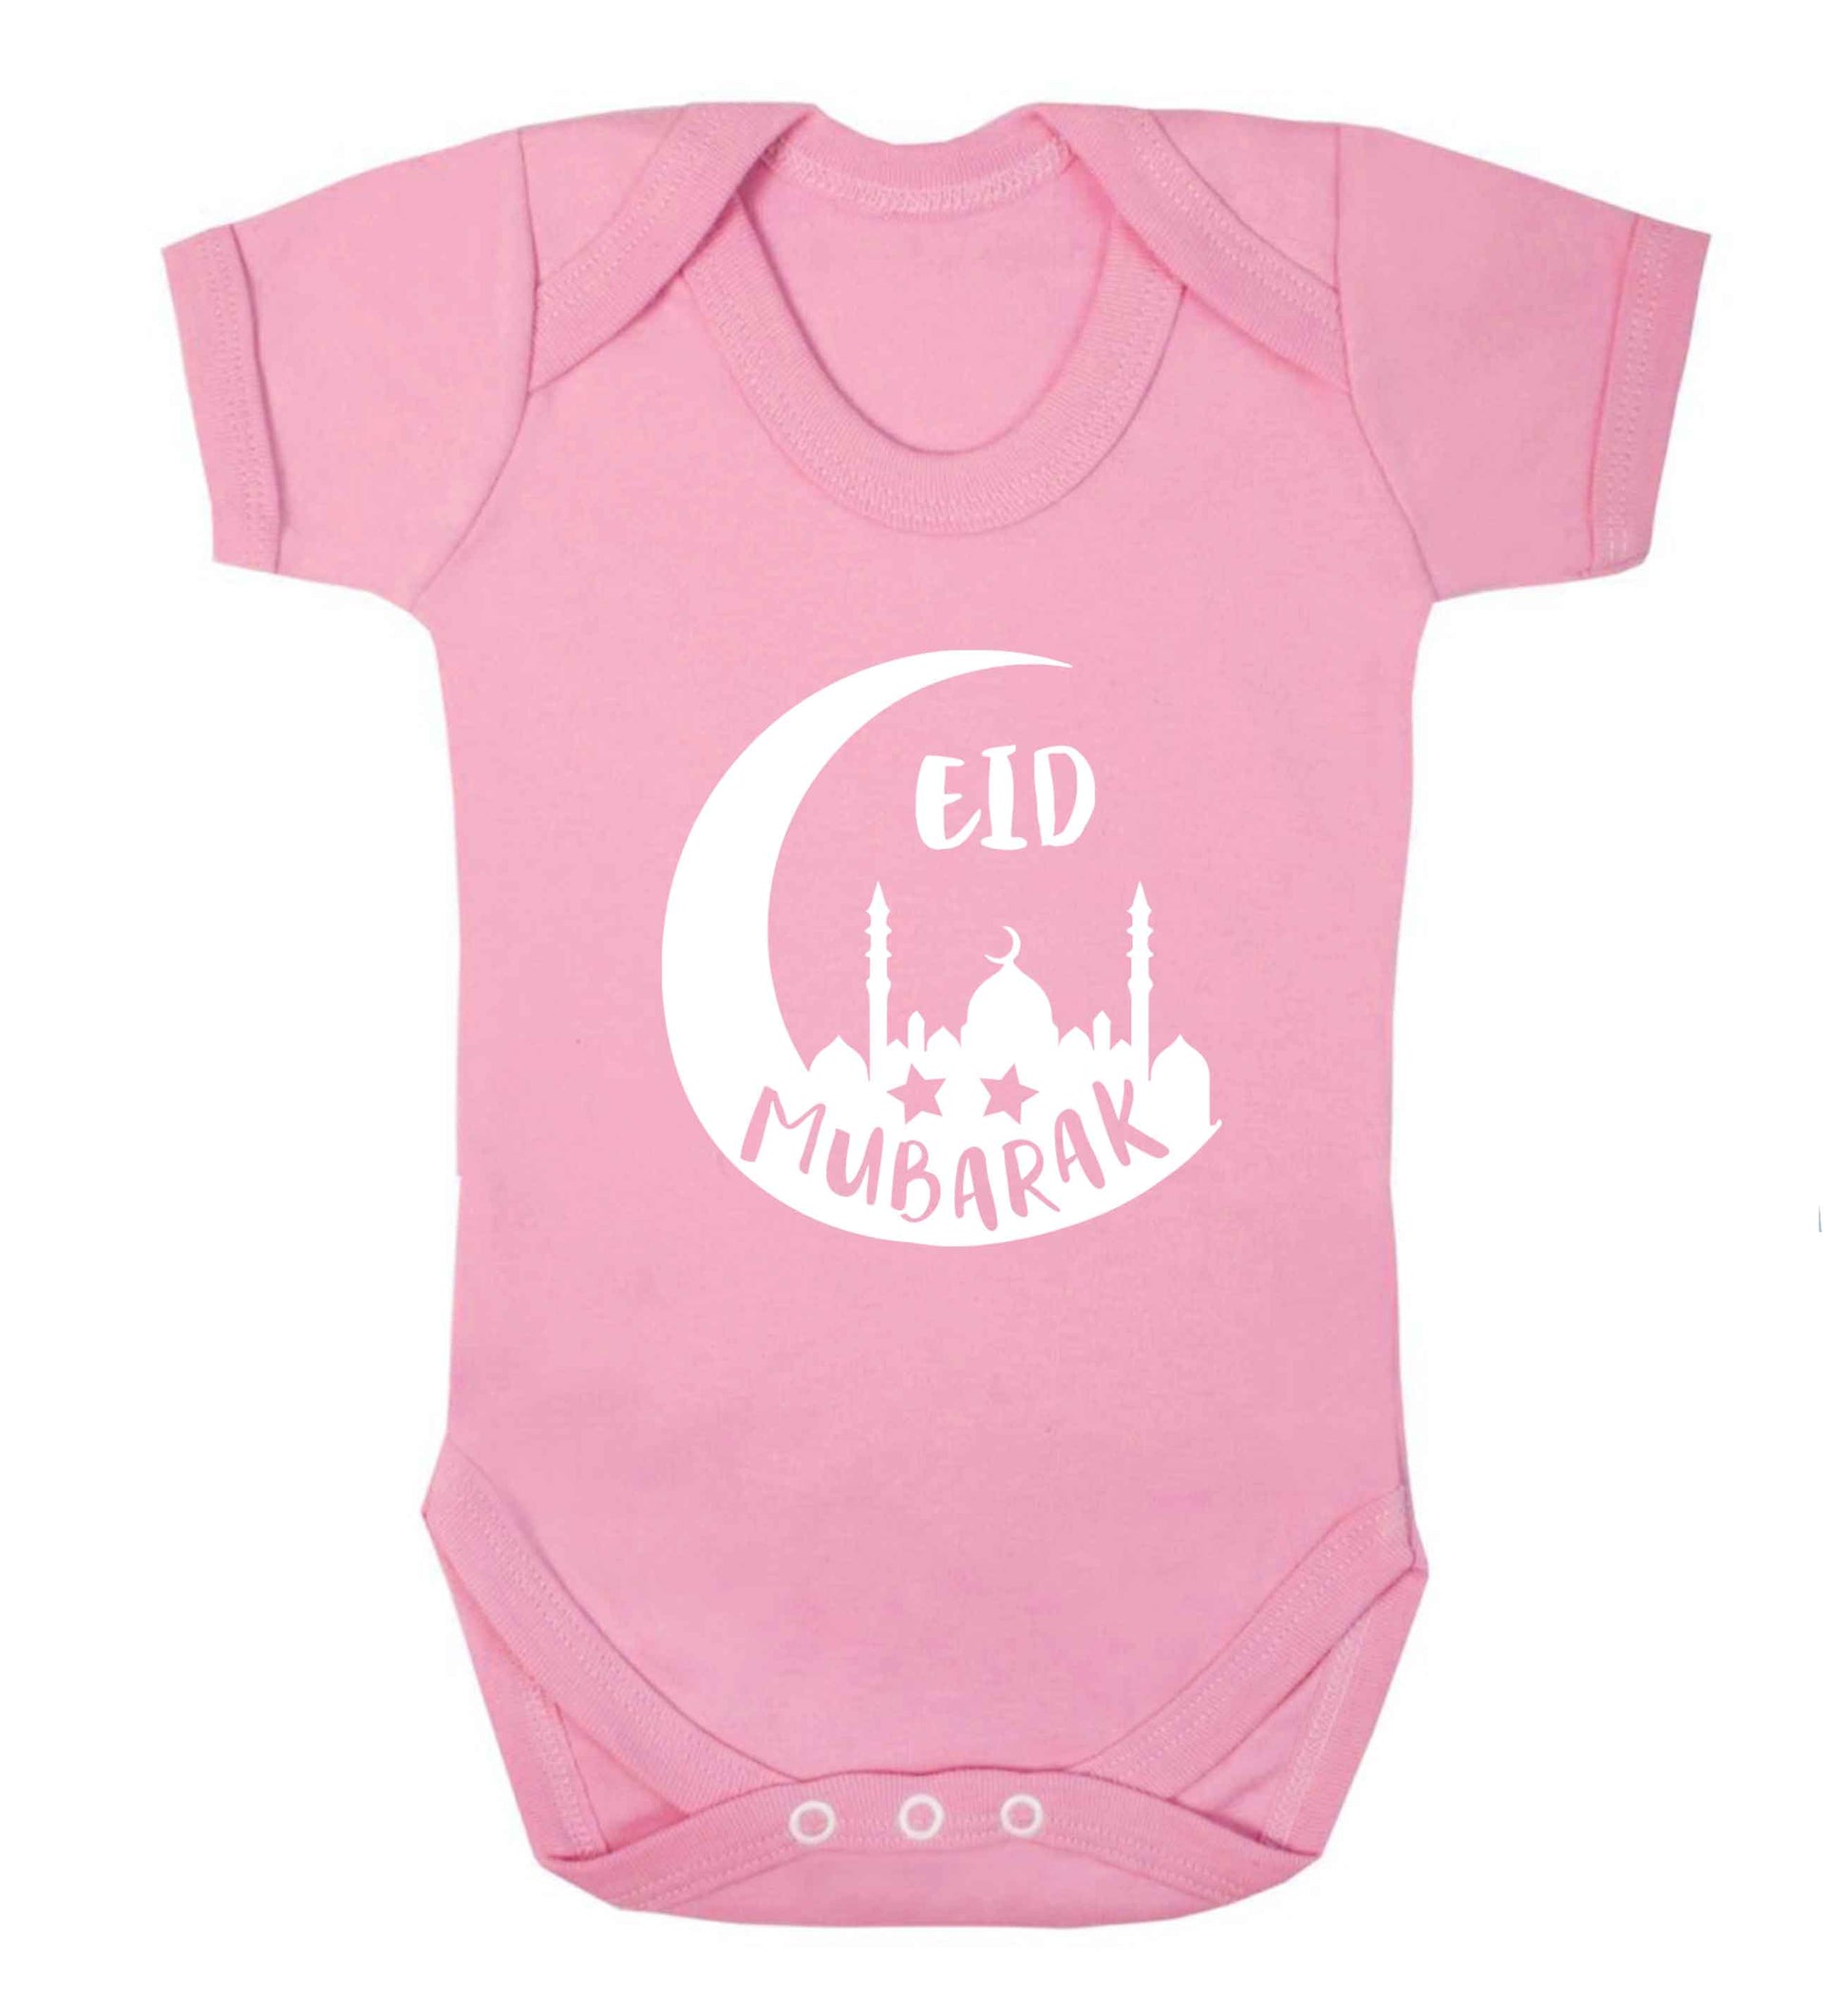 Eid mubarak baby vest pale pink 18-24 months